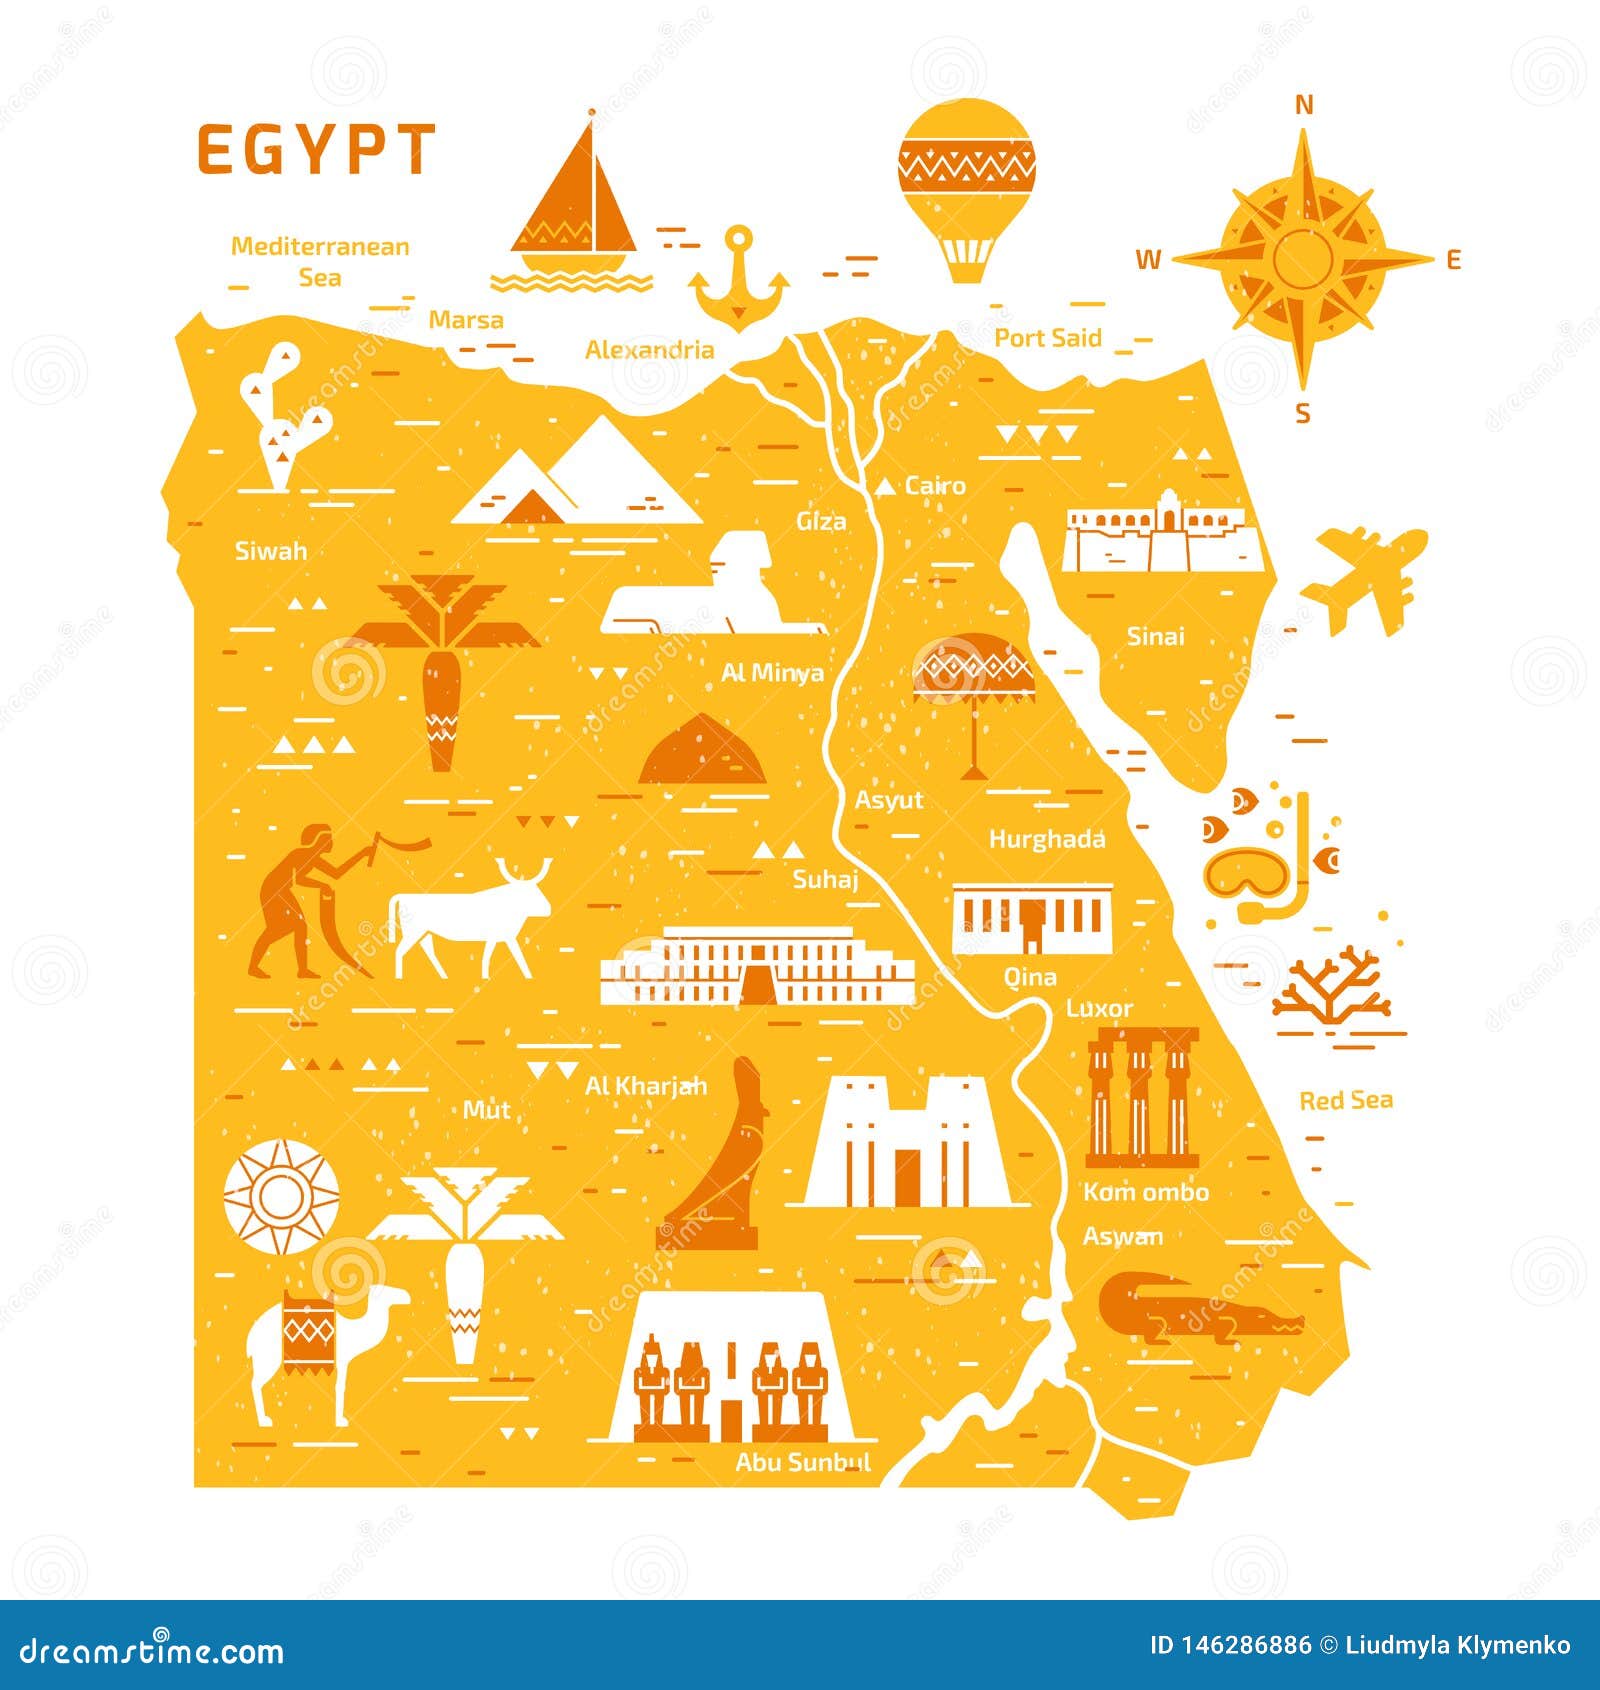 Знак достопримечательности на карте. Достопримечательности Египта на карте. Египет очертания страны. Силуэты для еги. Карта очертания страны Египет.